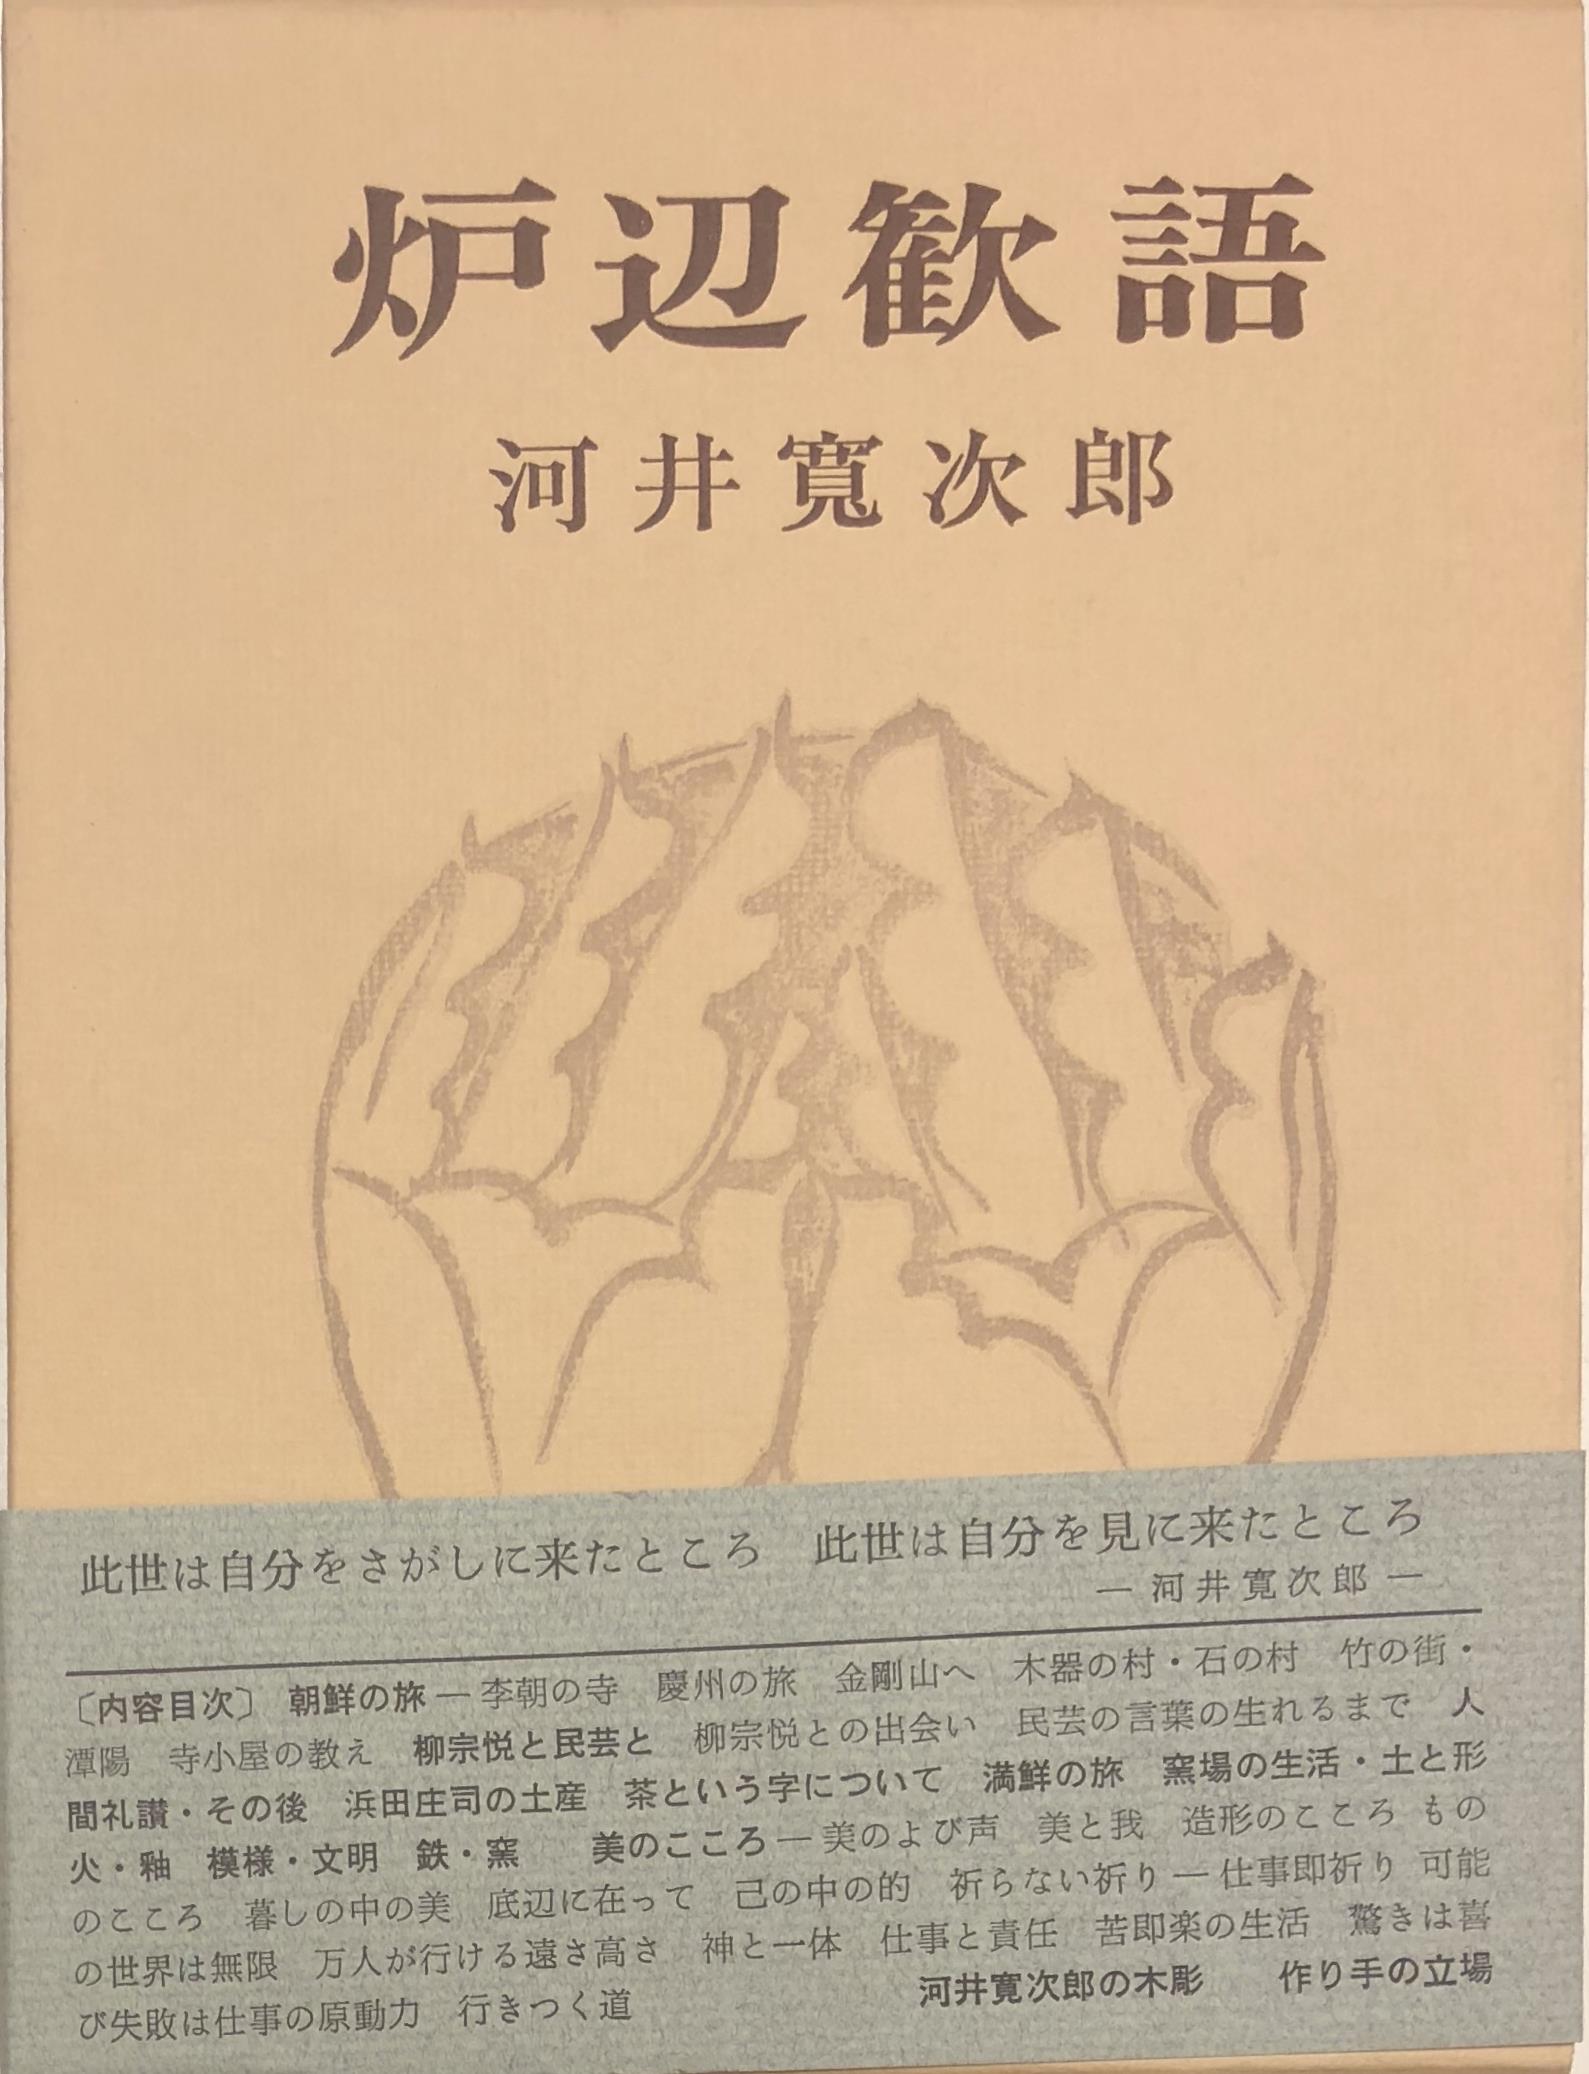 定本 北大路魯山人』ほか陶芸関係の古書を出張買取致しました | 東京 